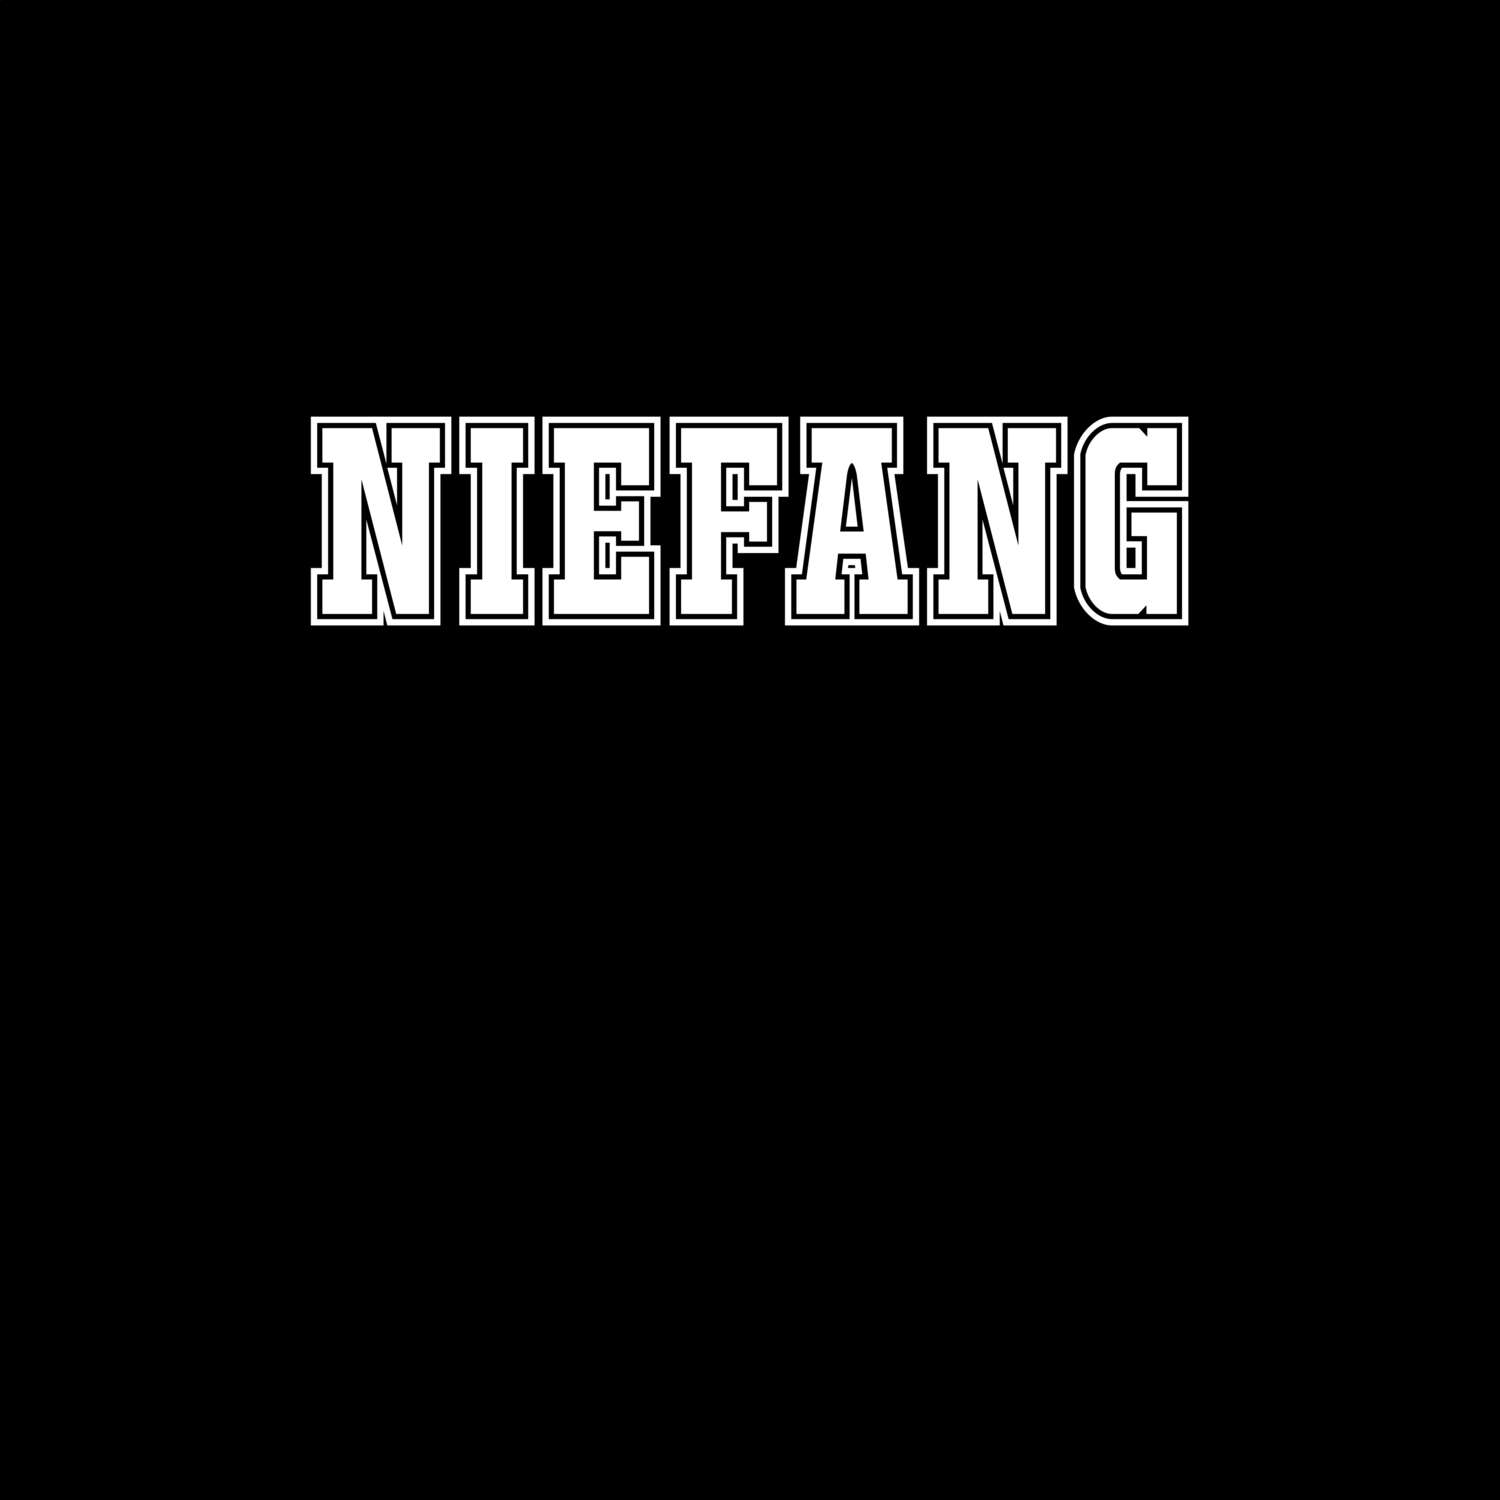 Niefang T-Shirt »Classic«